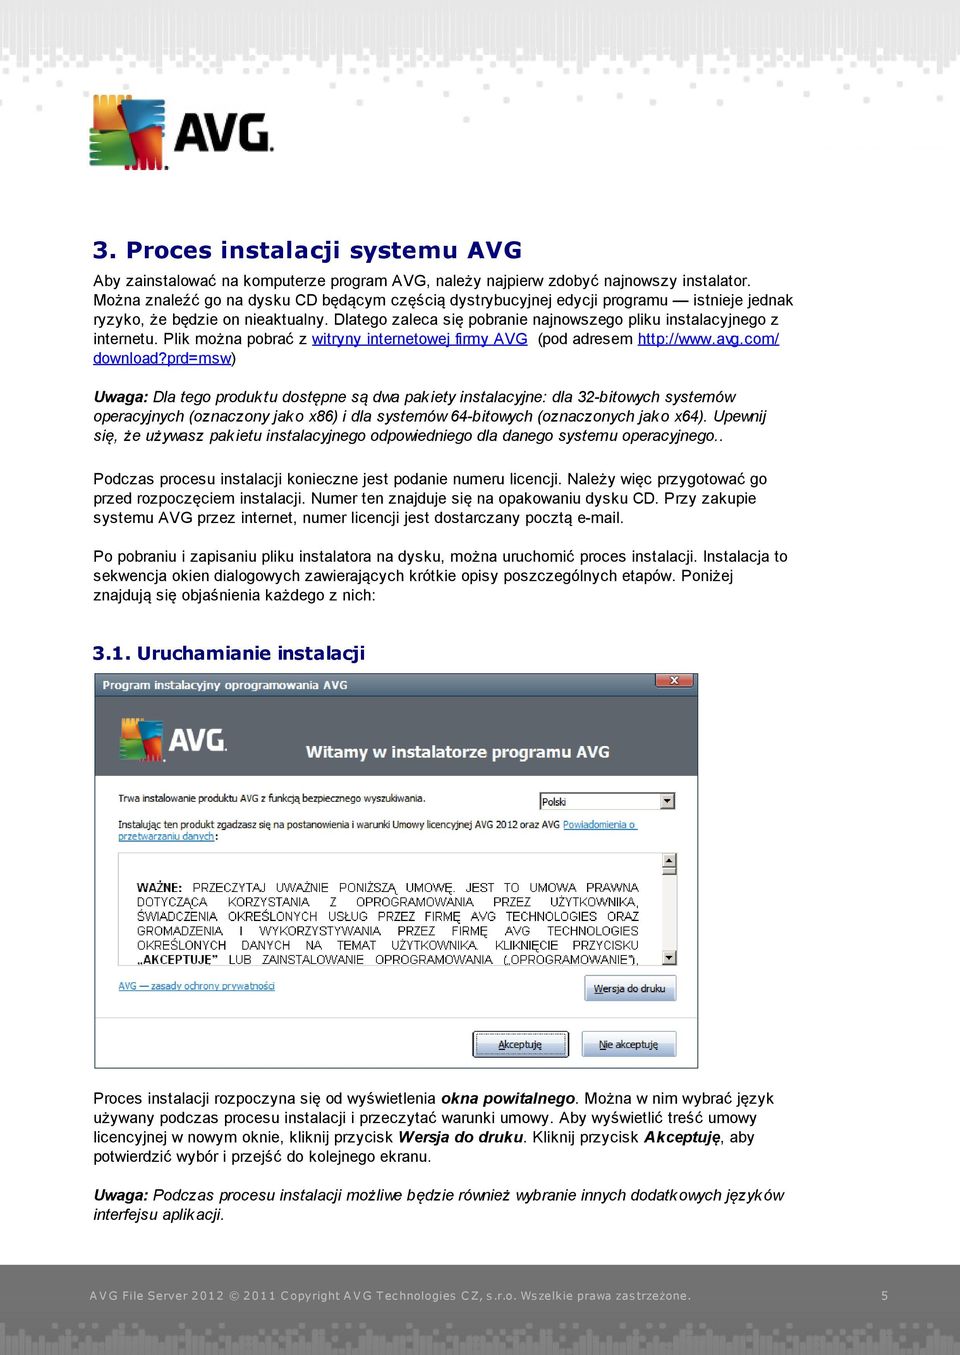 Plik można pobrać z witryny internetowej firmy AVG (pod adresem http://www.avg.com/ download?